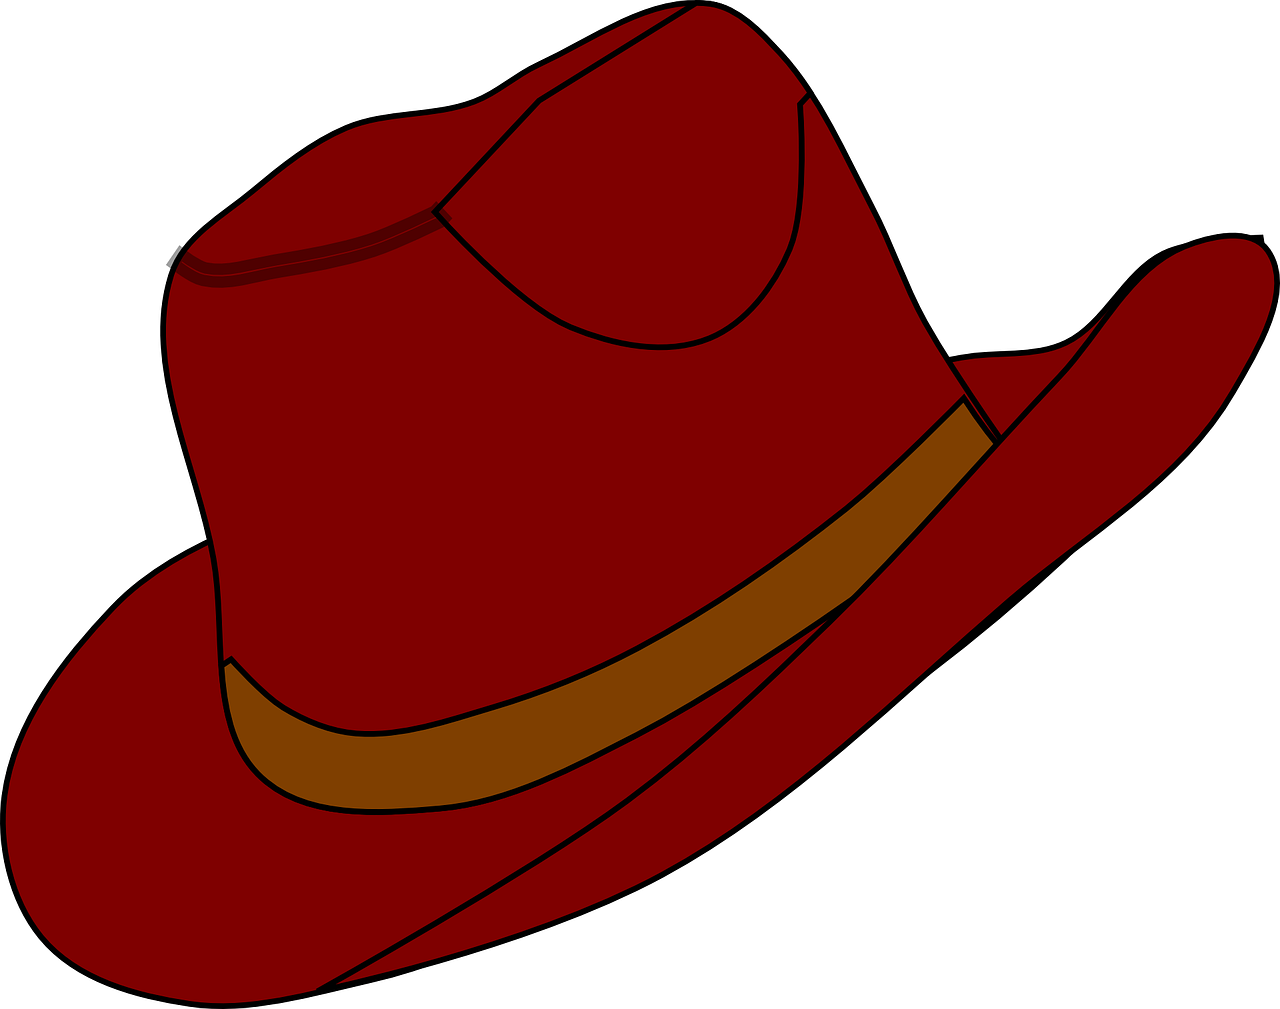 Hat clip art images